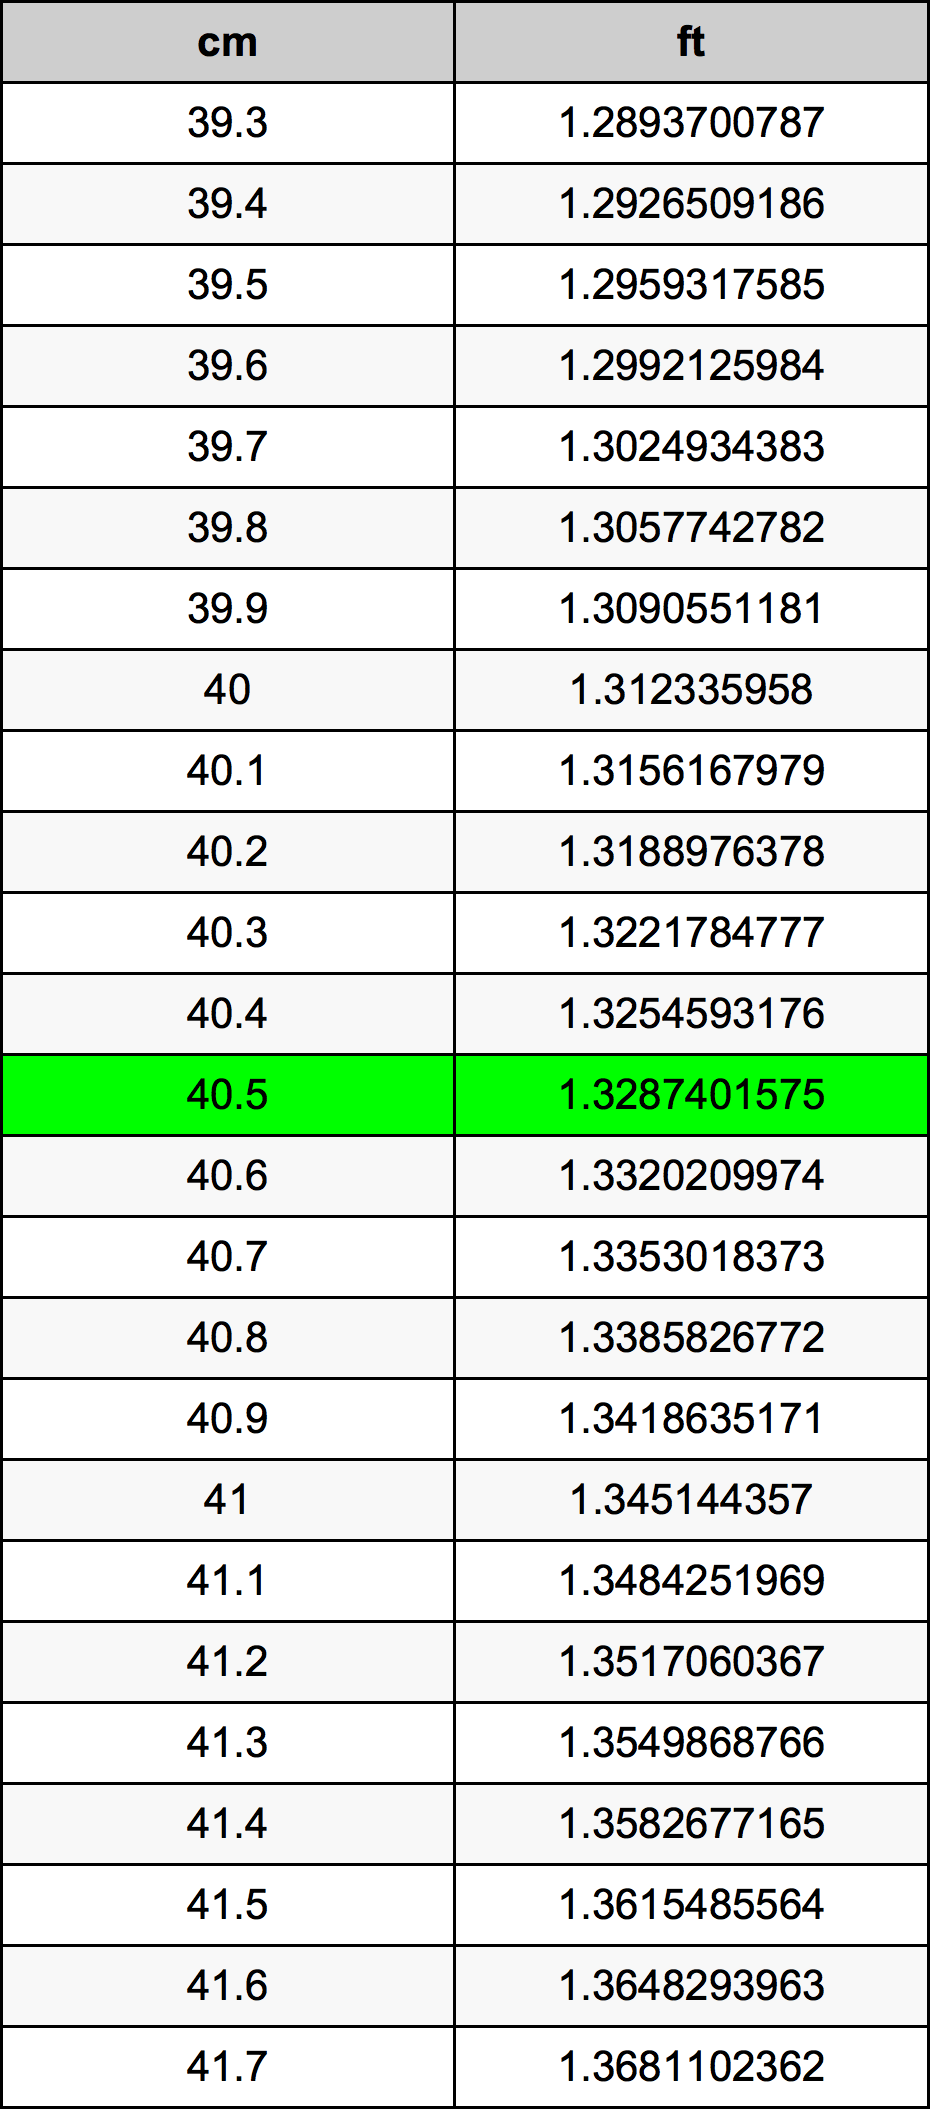 40.5 Centiméter átszámítási táblázat